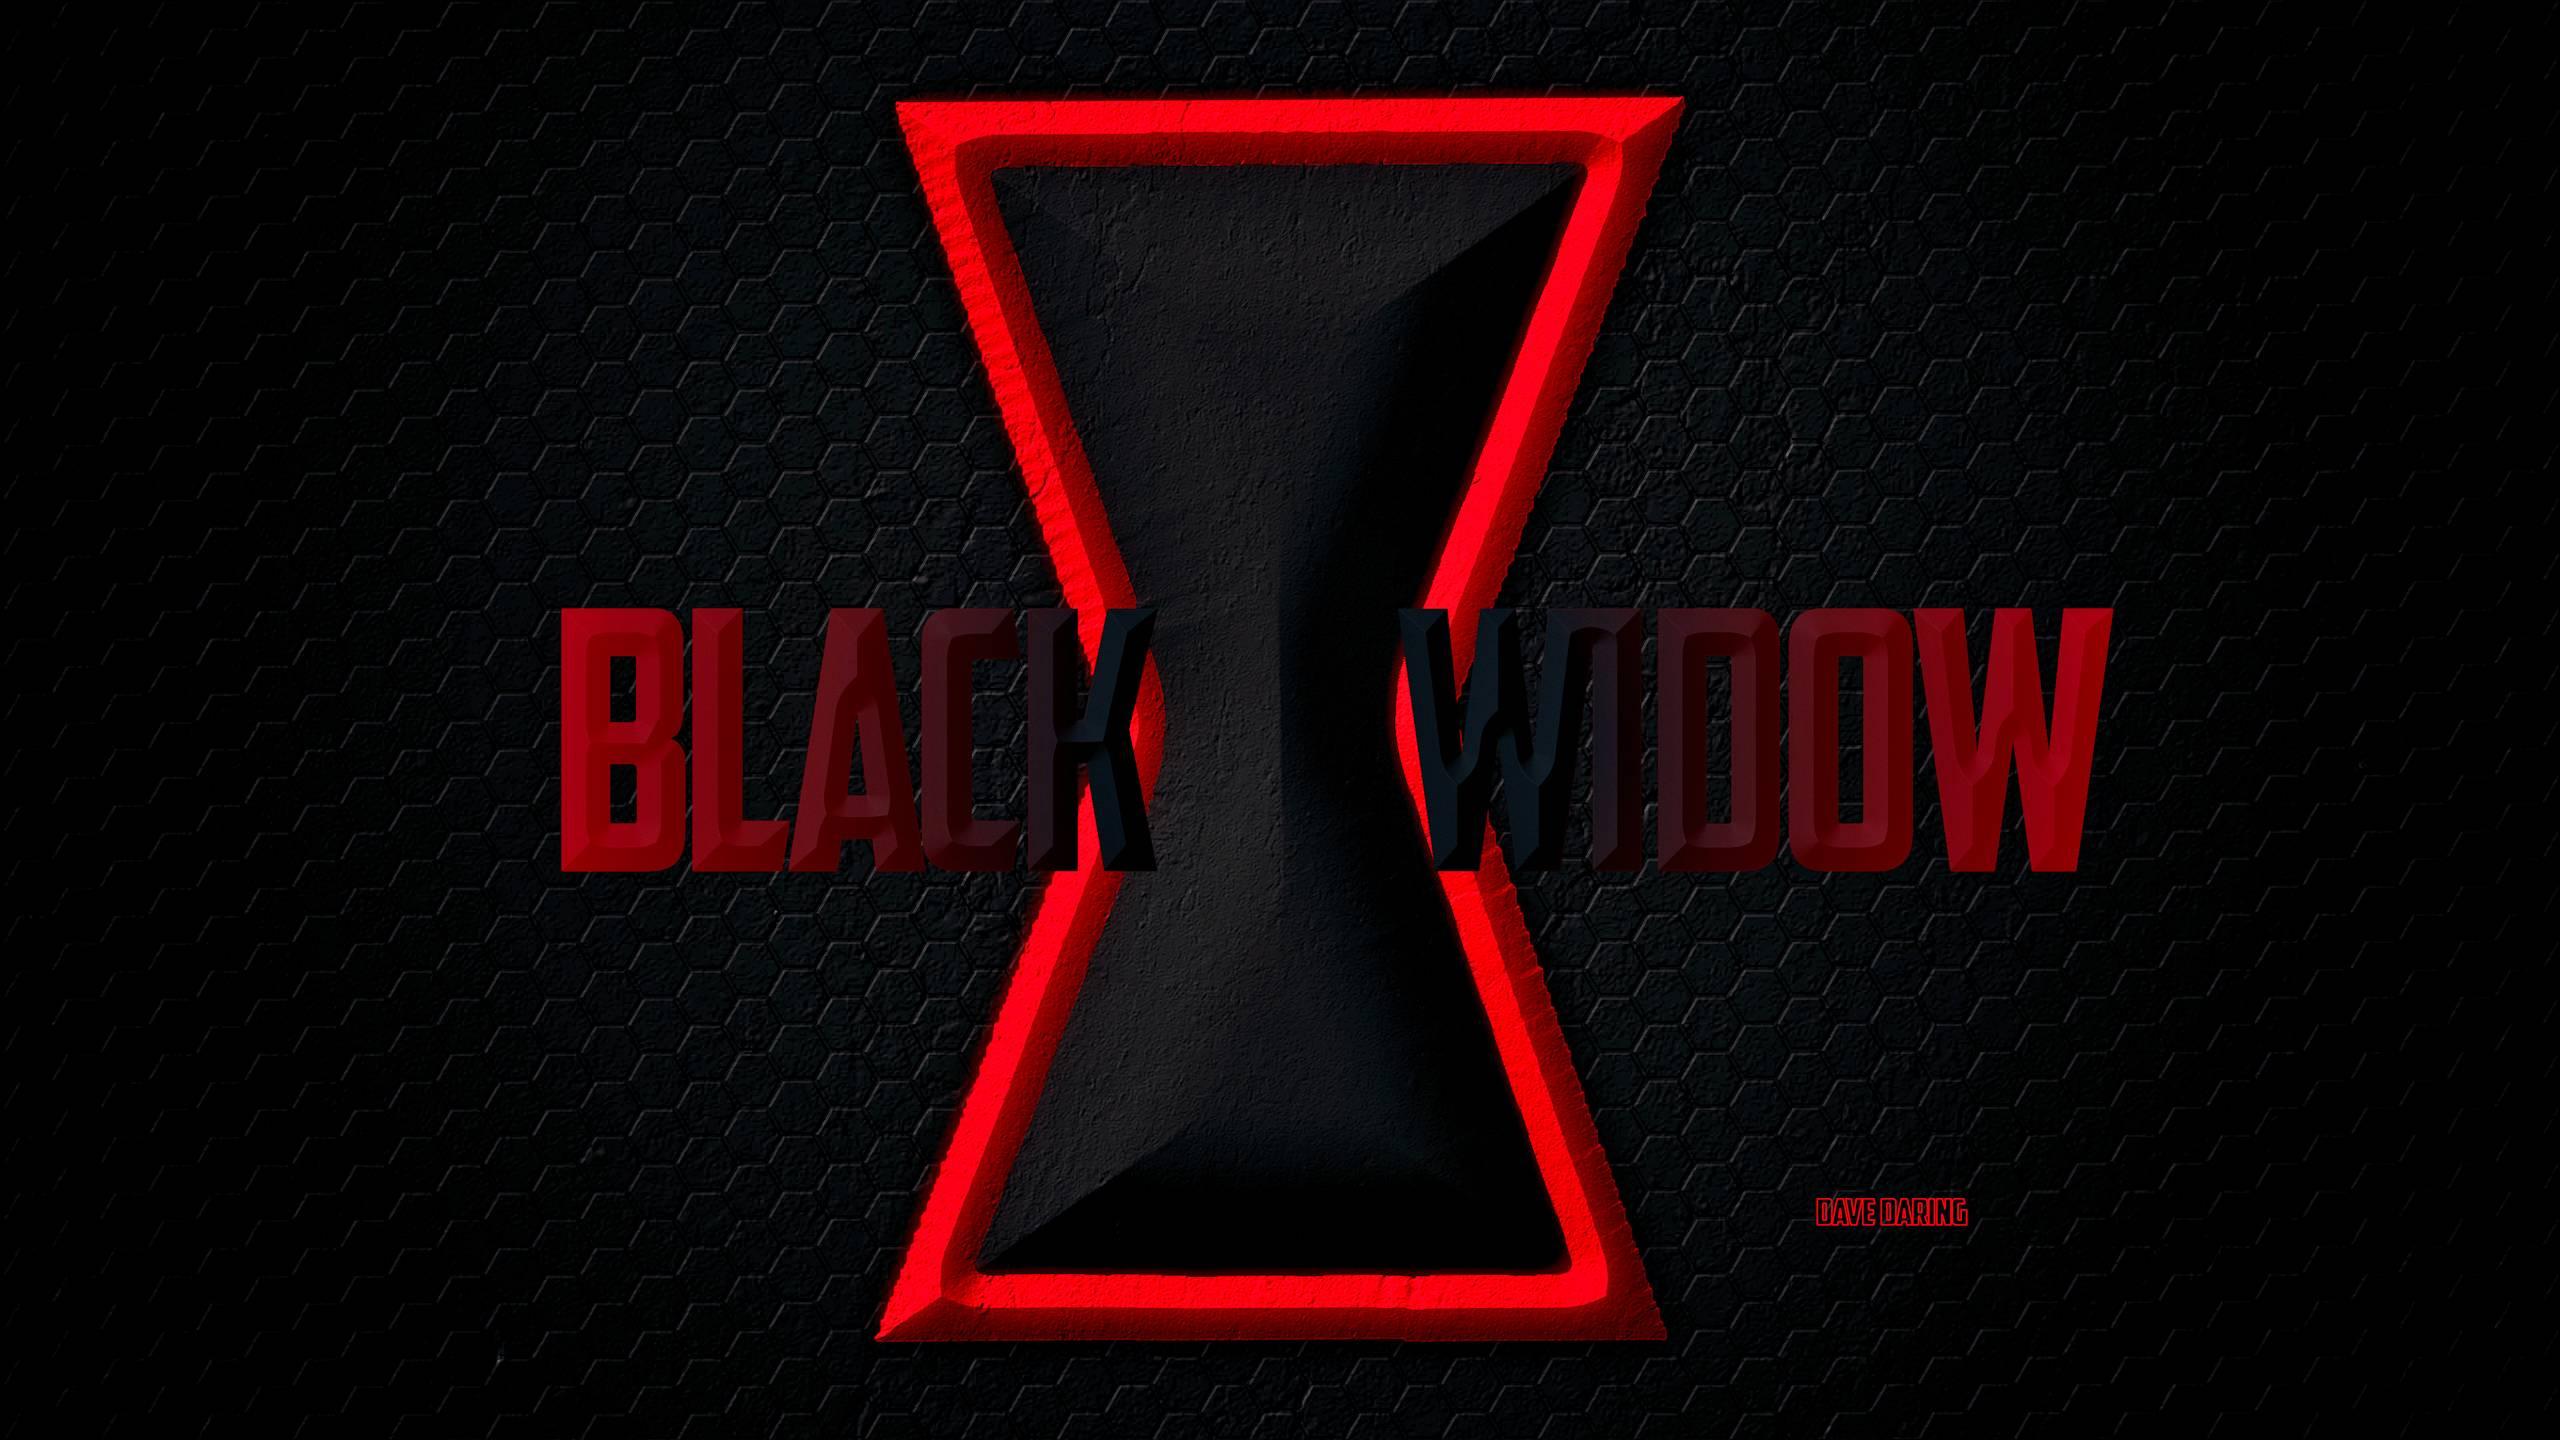 2560 x 1440 · jpeg - Black Widow HD Wallpaper | Background Image | 2560x1440 | ID:606497 ...